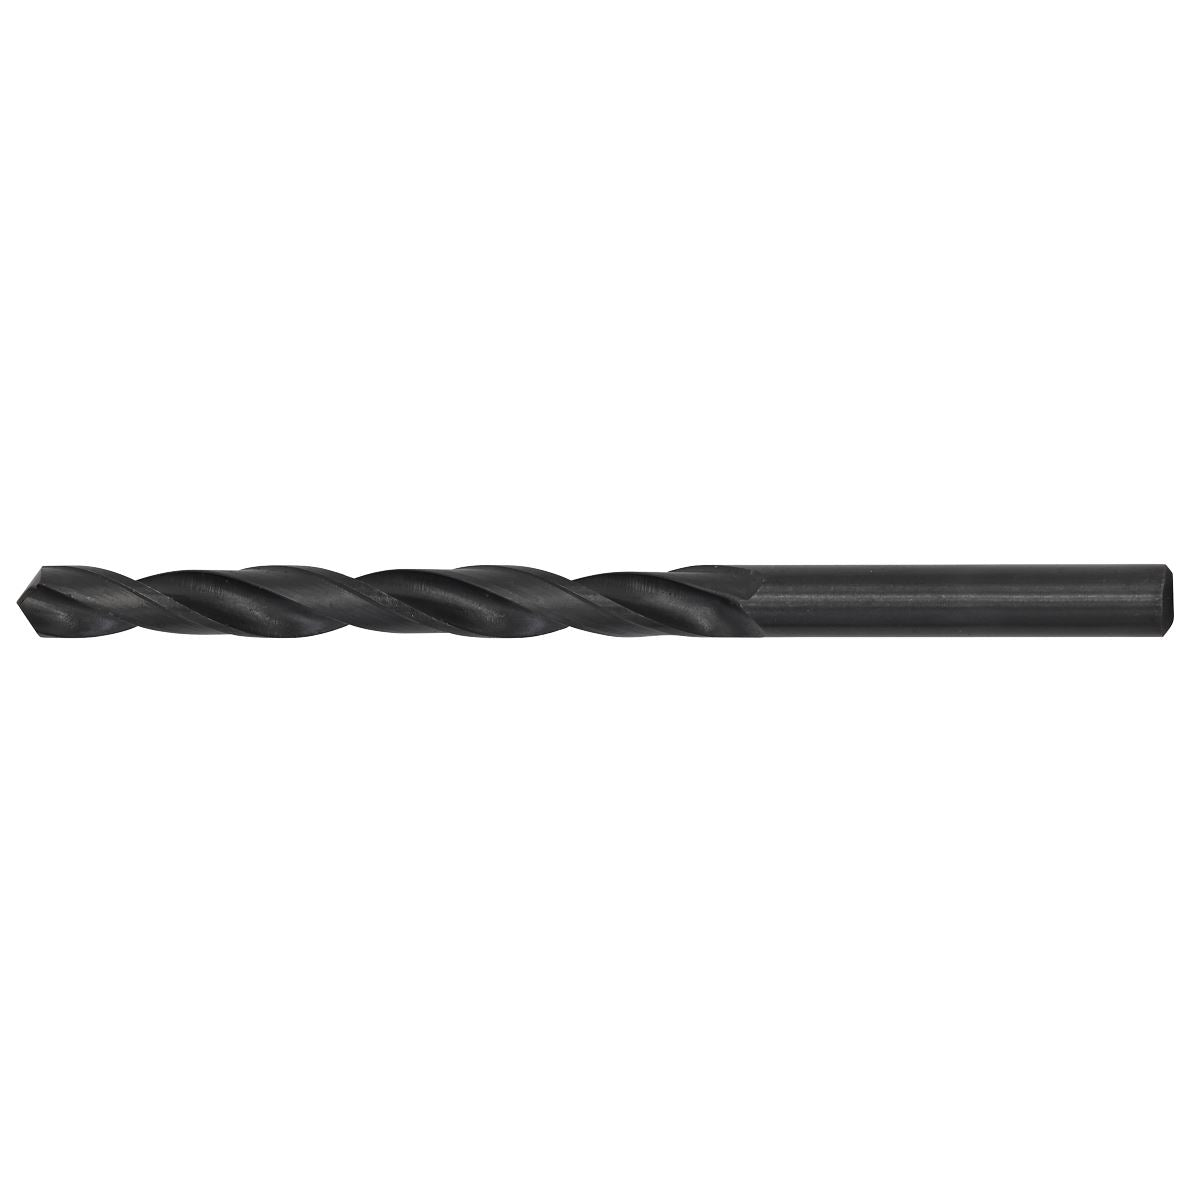 Sealey HSS Twist Drill Bit Ø7.5 x 105mm